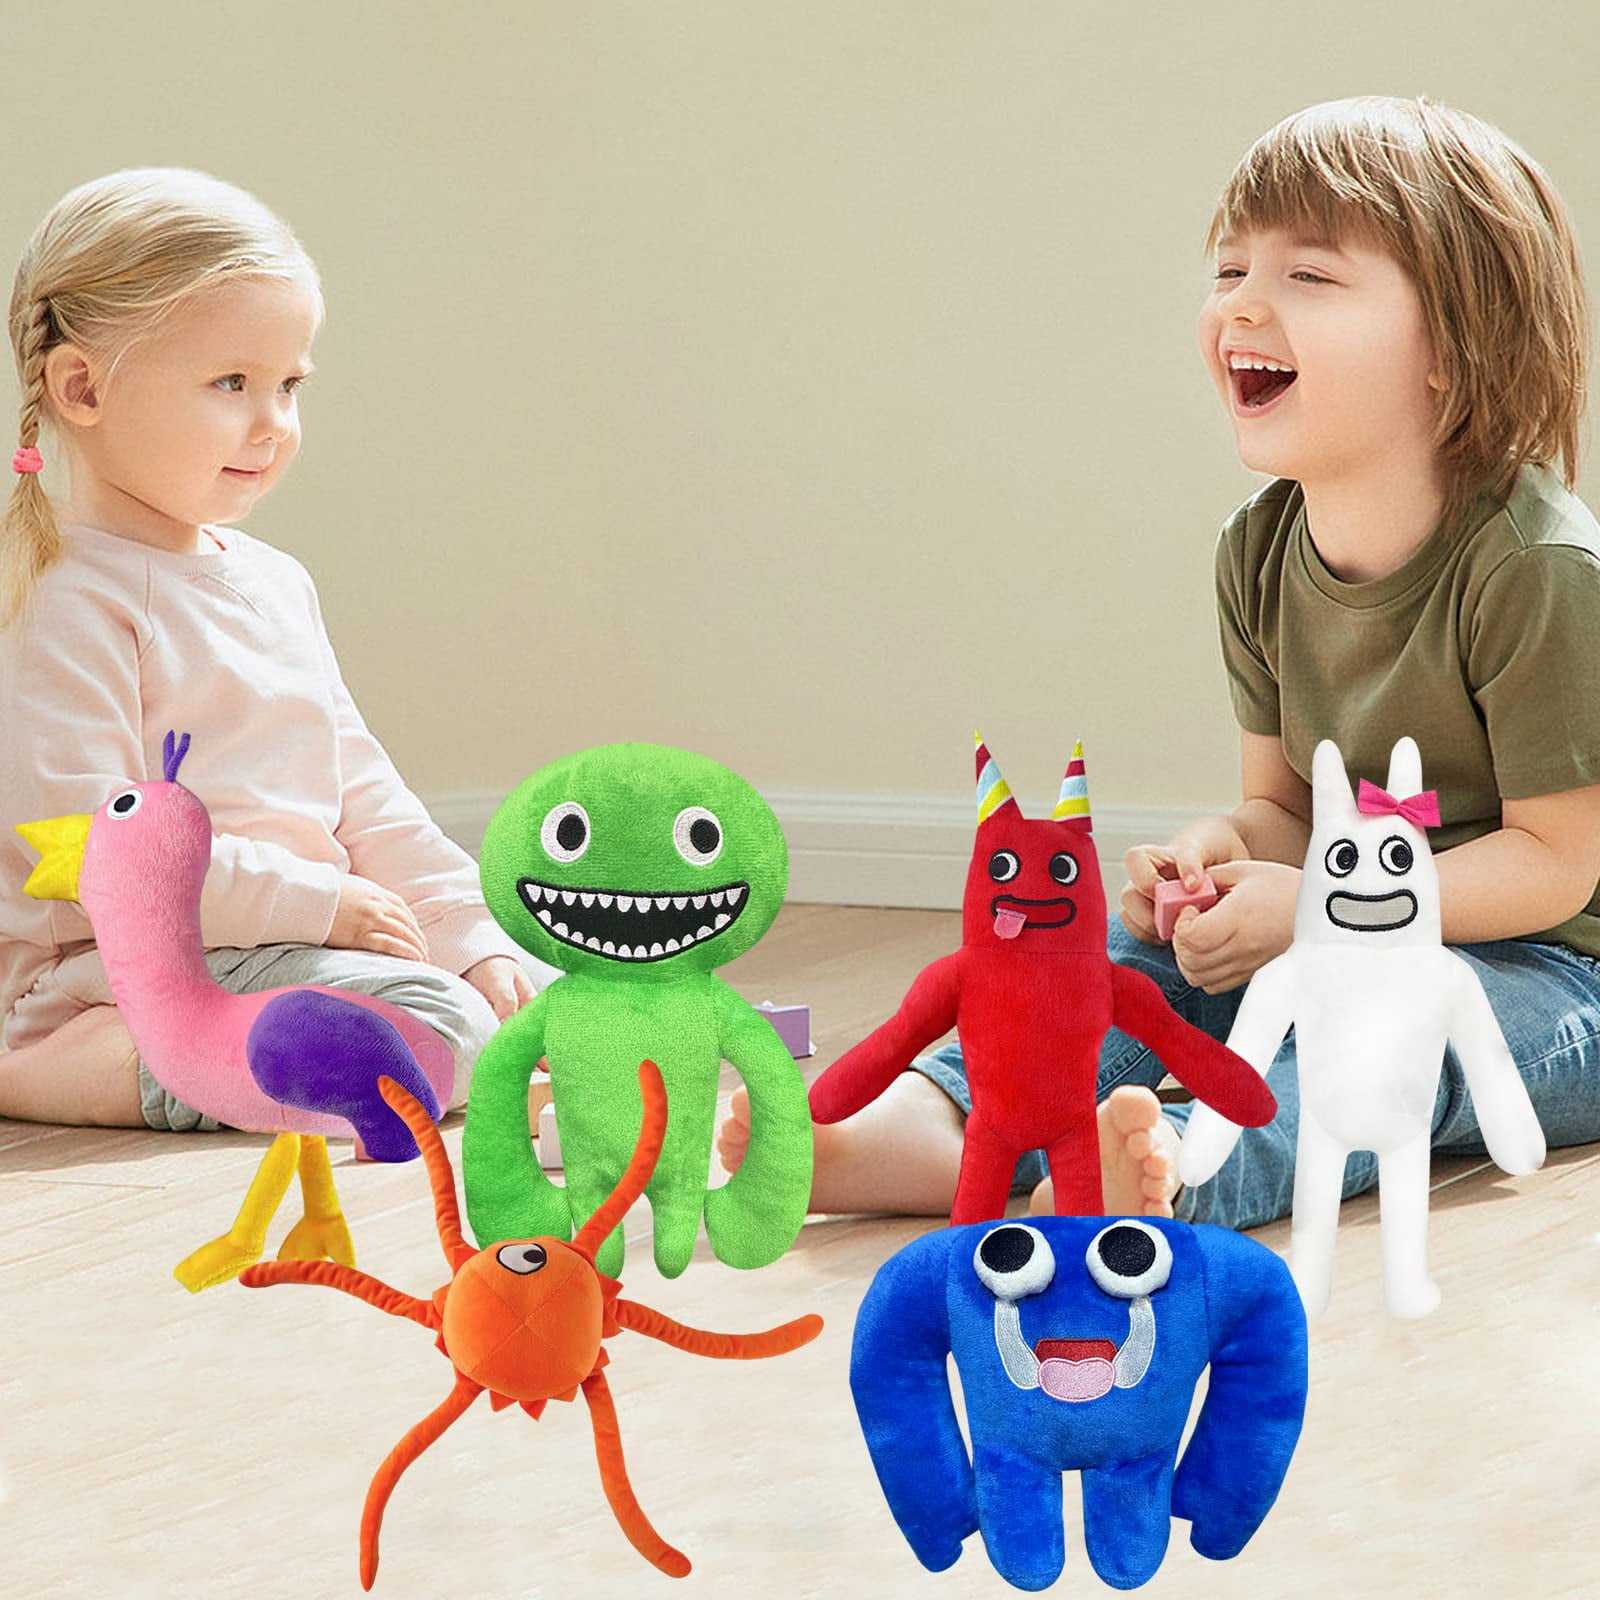 Garten of Banban Plush Toys Kids Game Nabnab Spider Monster